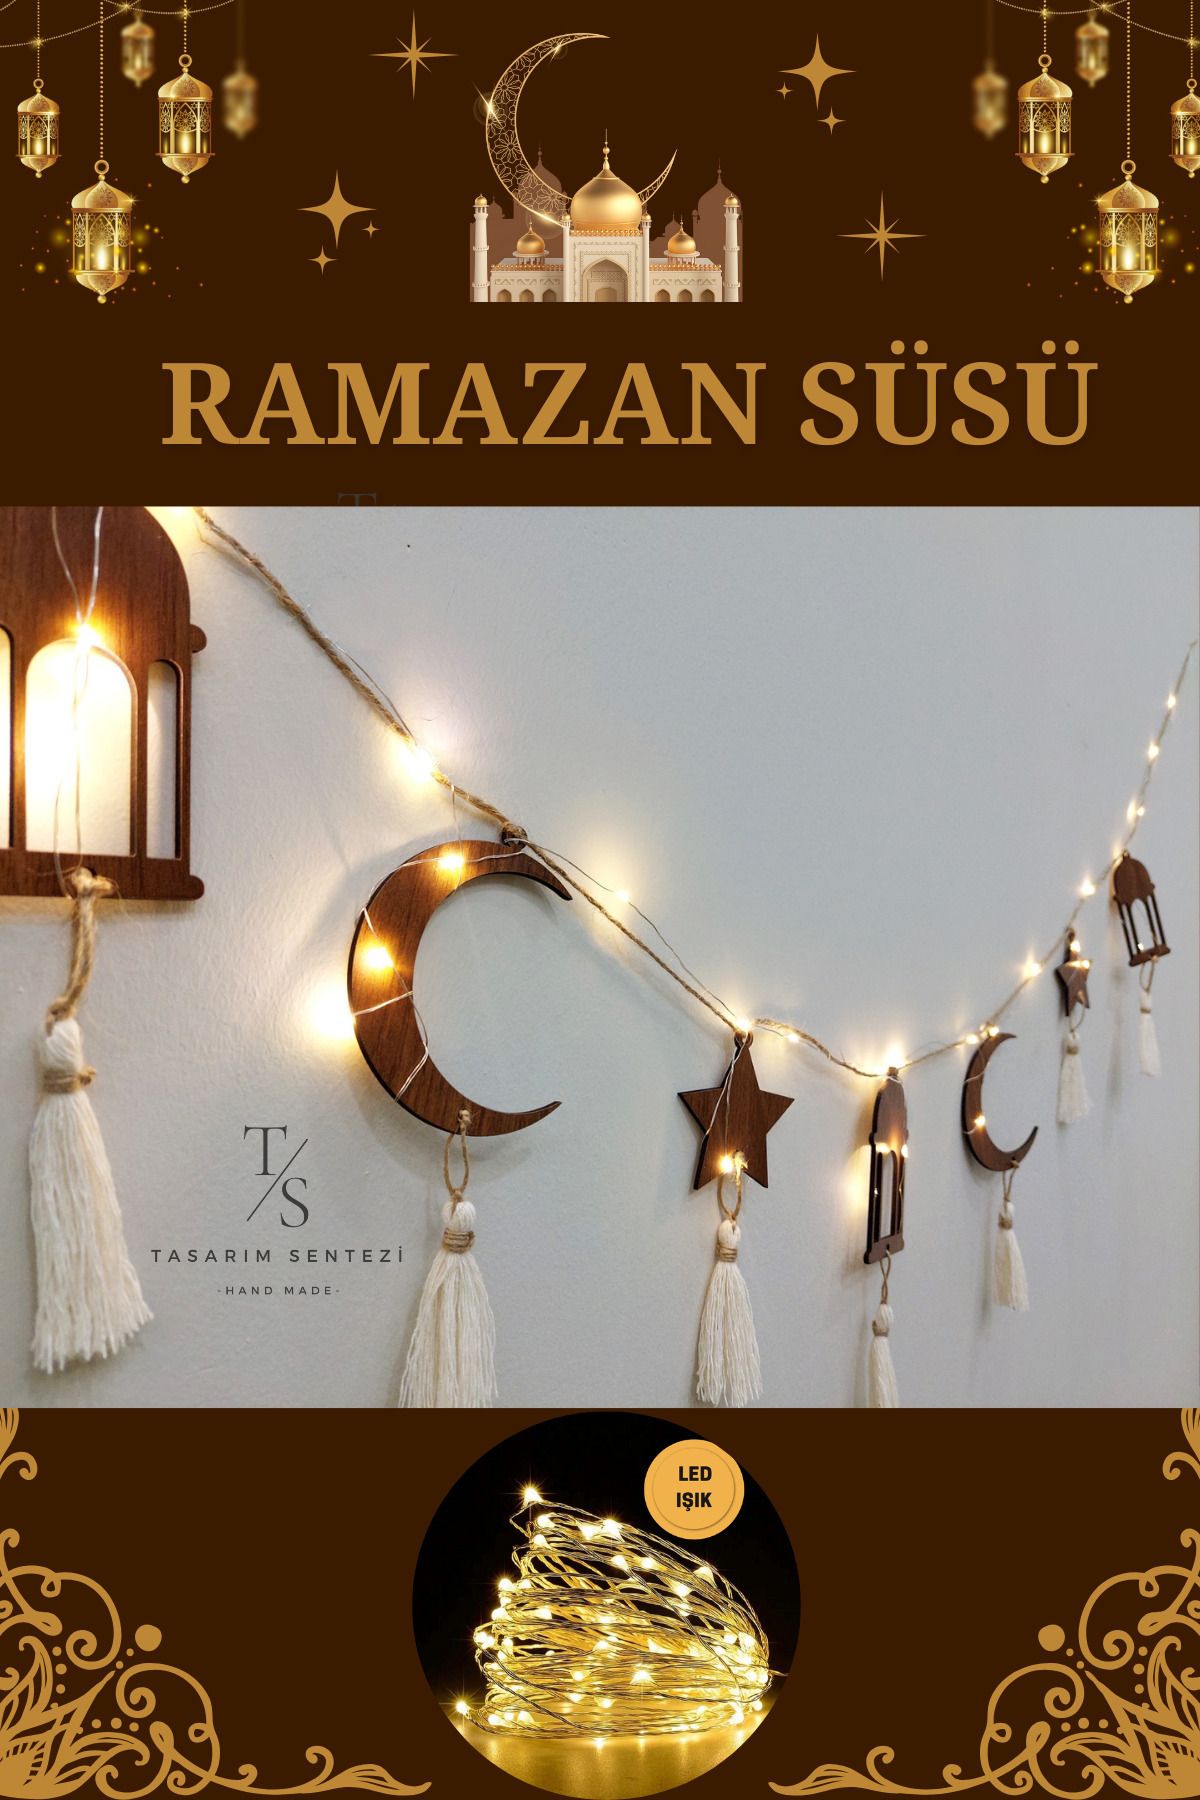 Tasarım Sentezi Hoşgeldin Ramazan Süsleri Ahşap Led Işık Dekoratif Duvar Kandil Ay Yıldız Hilal Ramadan Eid Mubarek